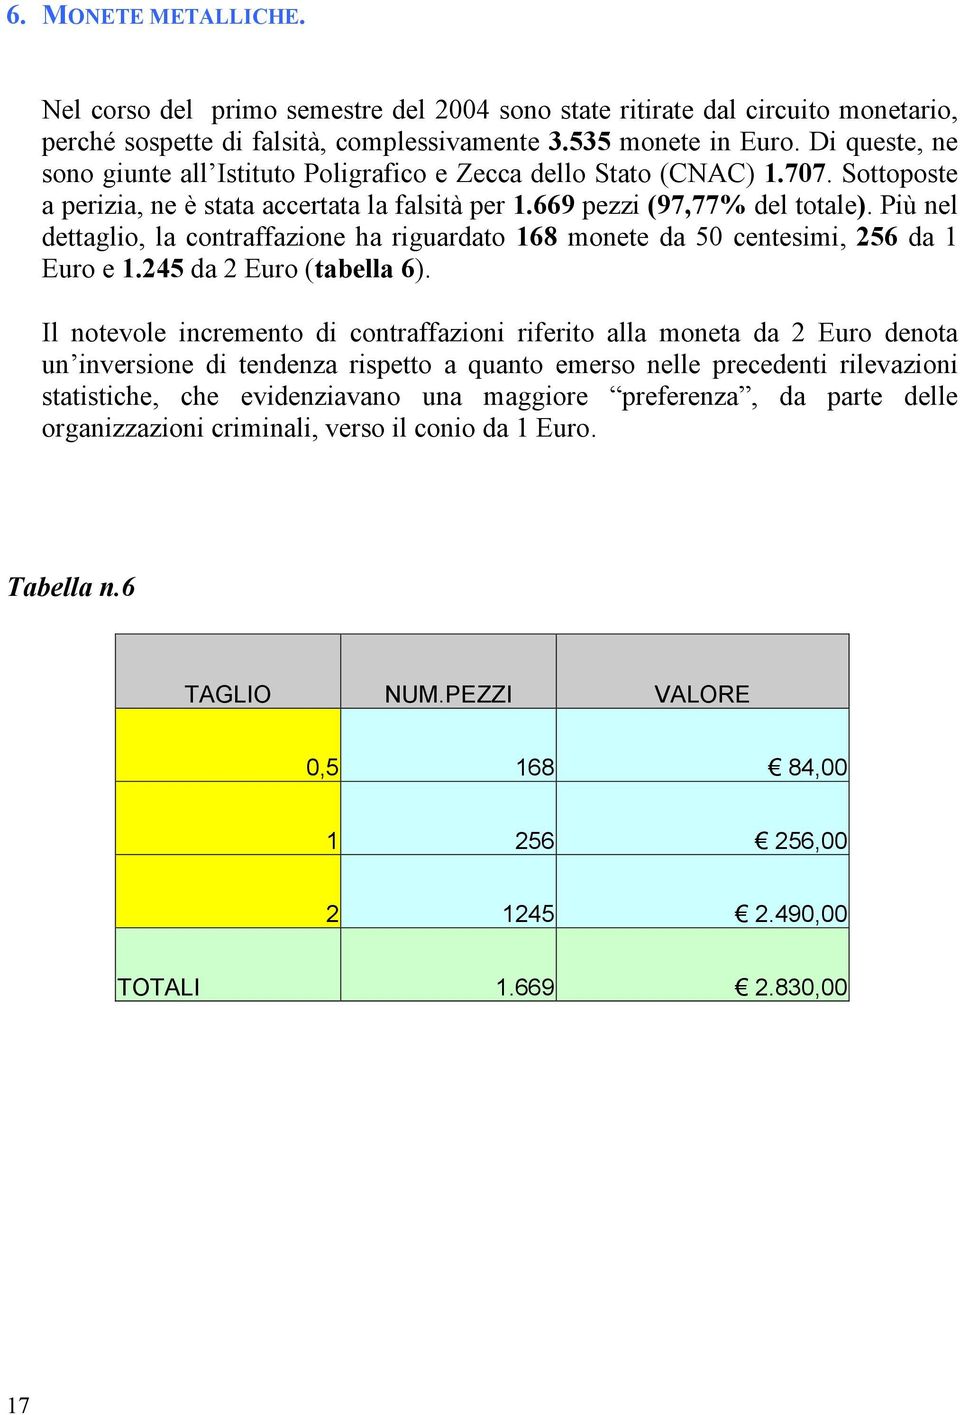 Più nel dettaglio, la contraffazione ha riguardato 168 monete da 50 centesimi, 256 da 1 Euro e 1.245 da 2 Euro (tabella 6).